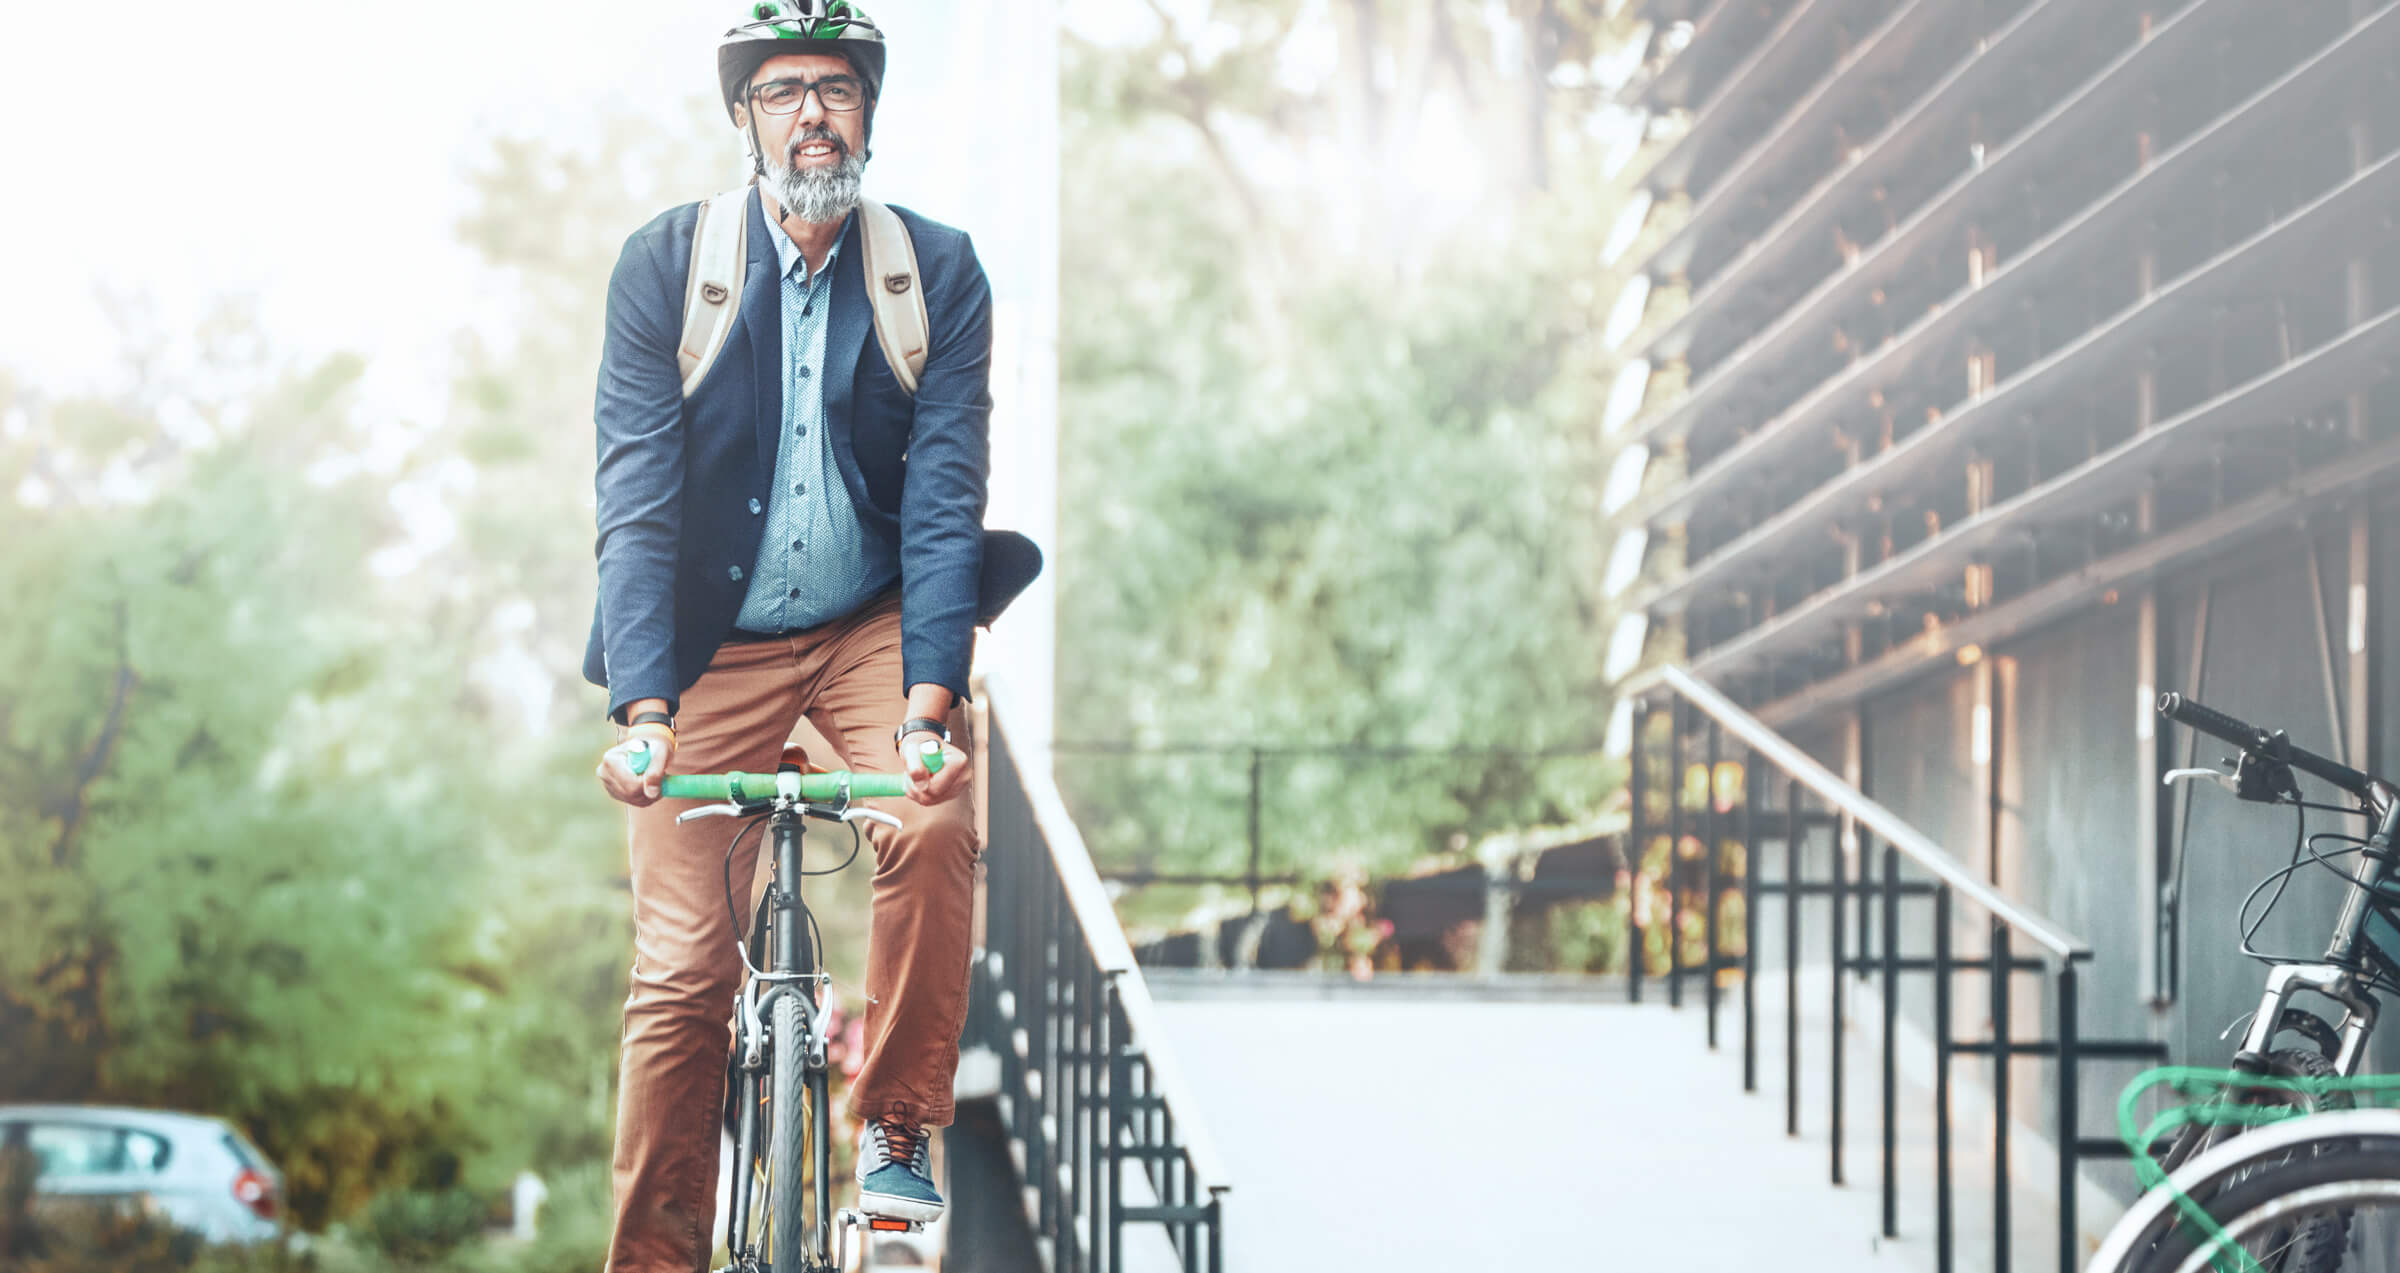 Spokojný klient LYNX užívajúci si voľného času na bicykli a výhod investičného účtu